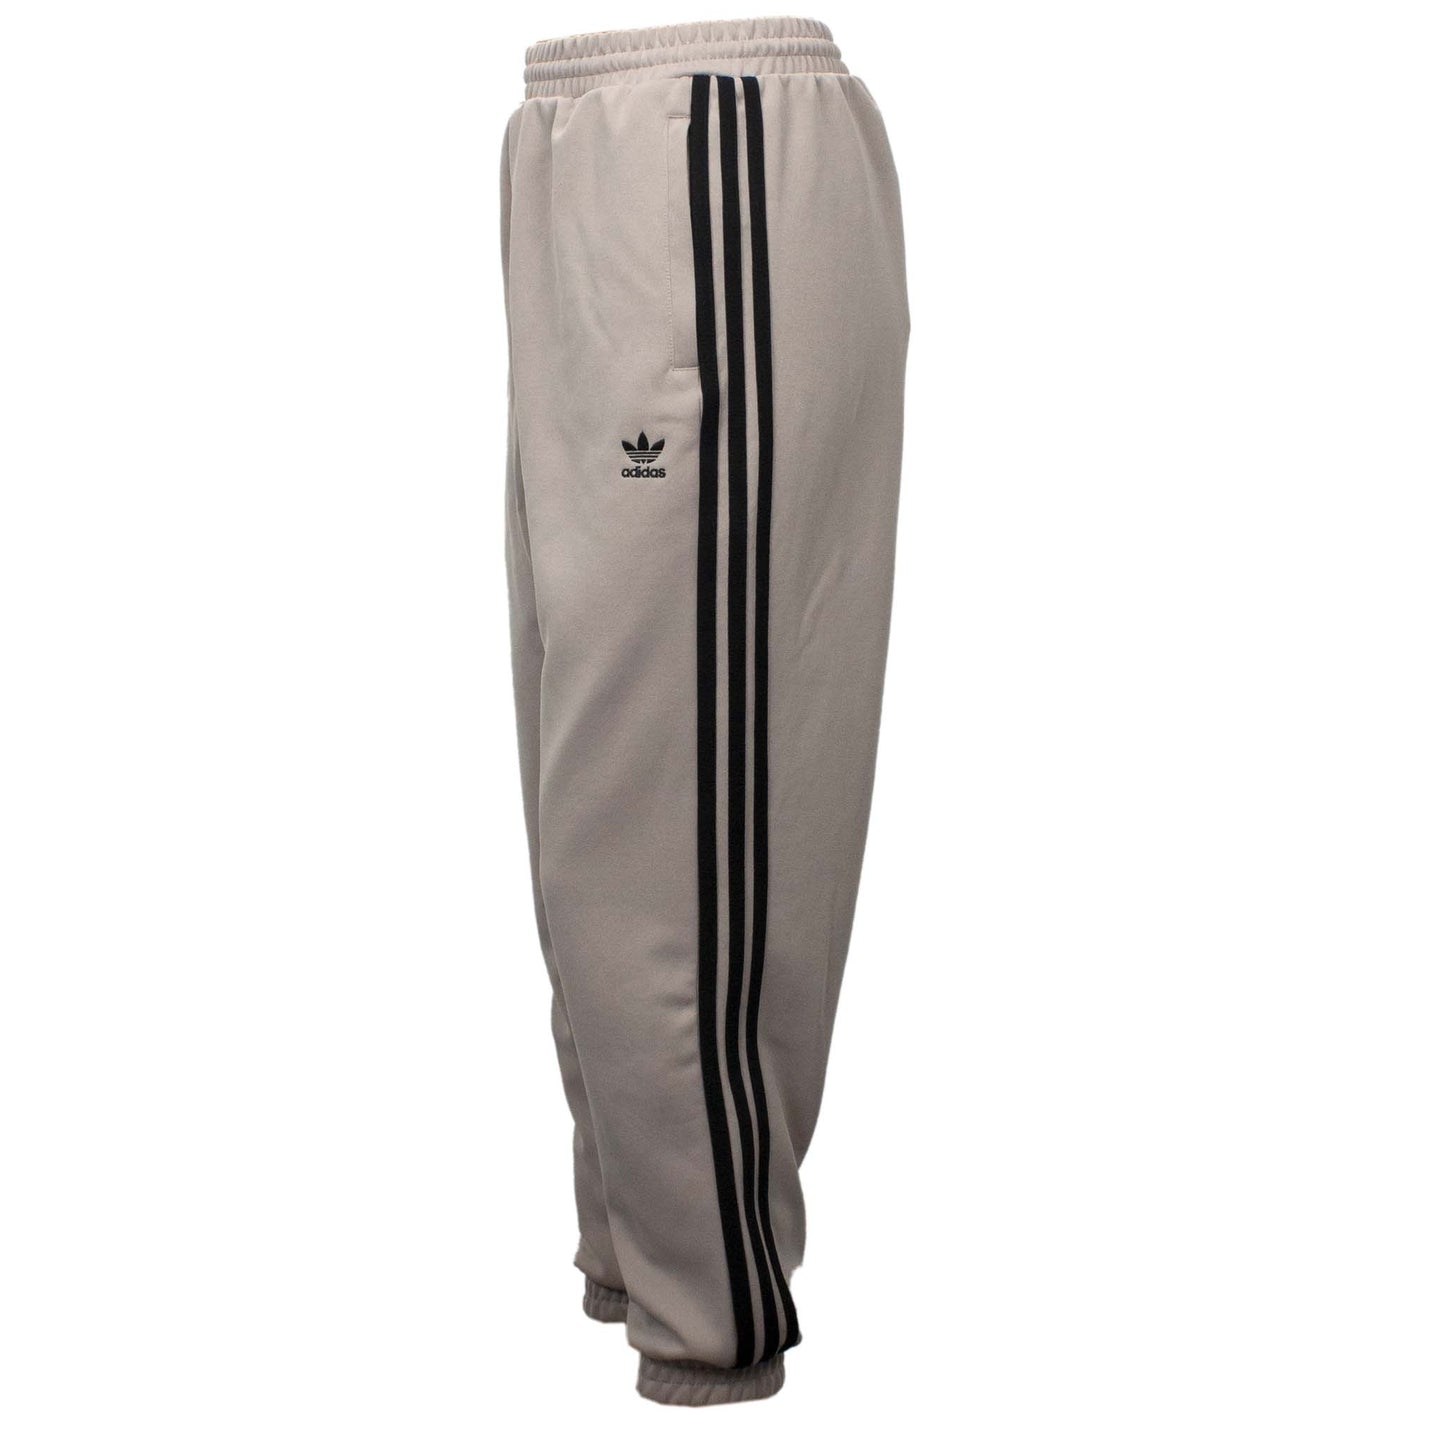 Adidas Originals Track Pants Damen Hose Sporthose Jogginghose Braun EJ9069